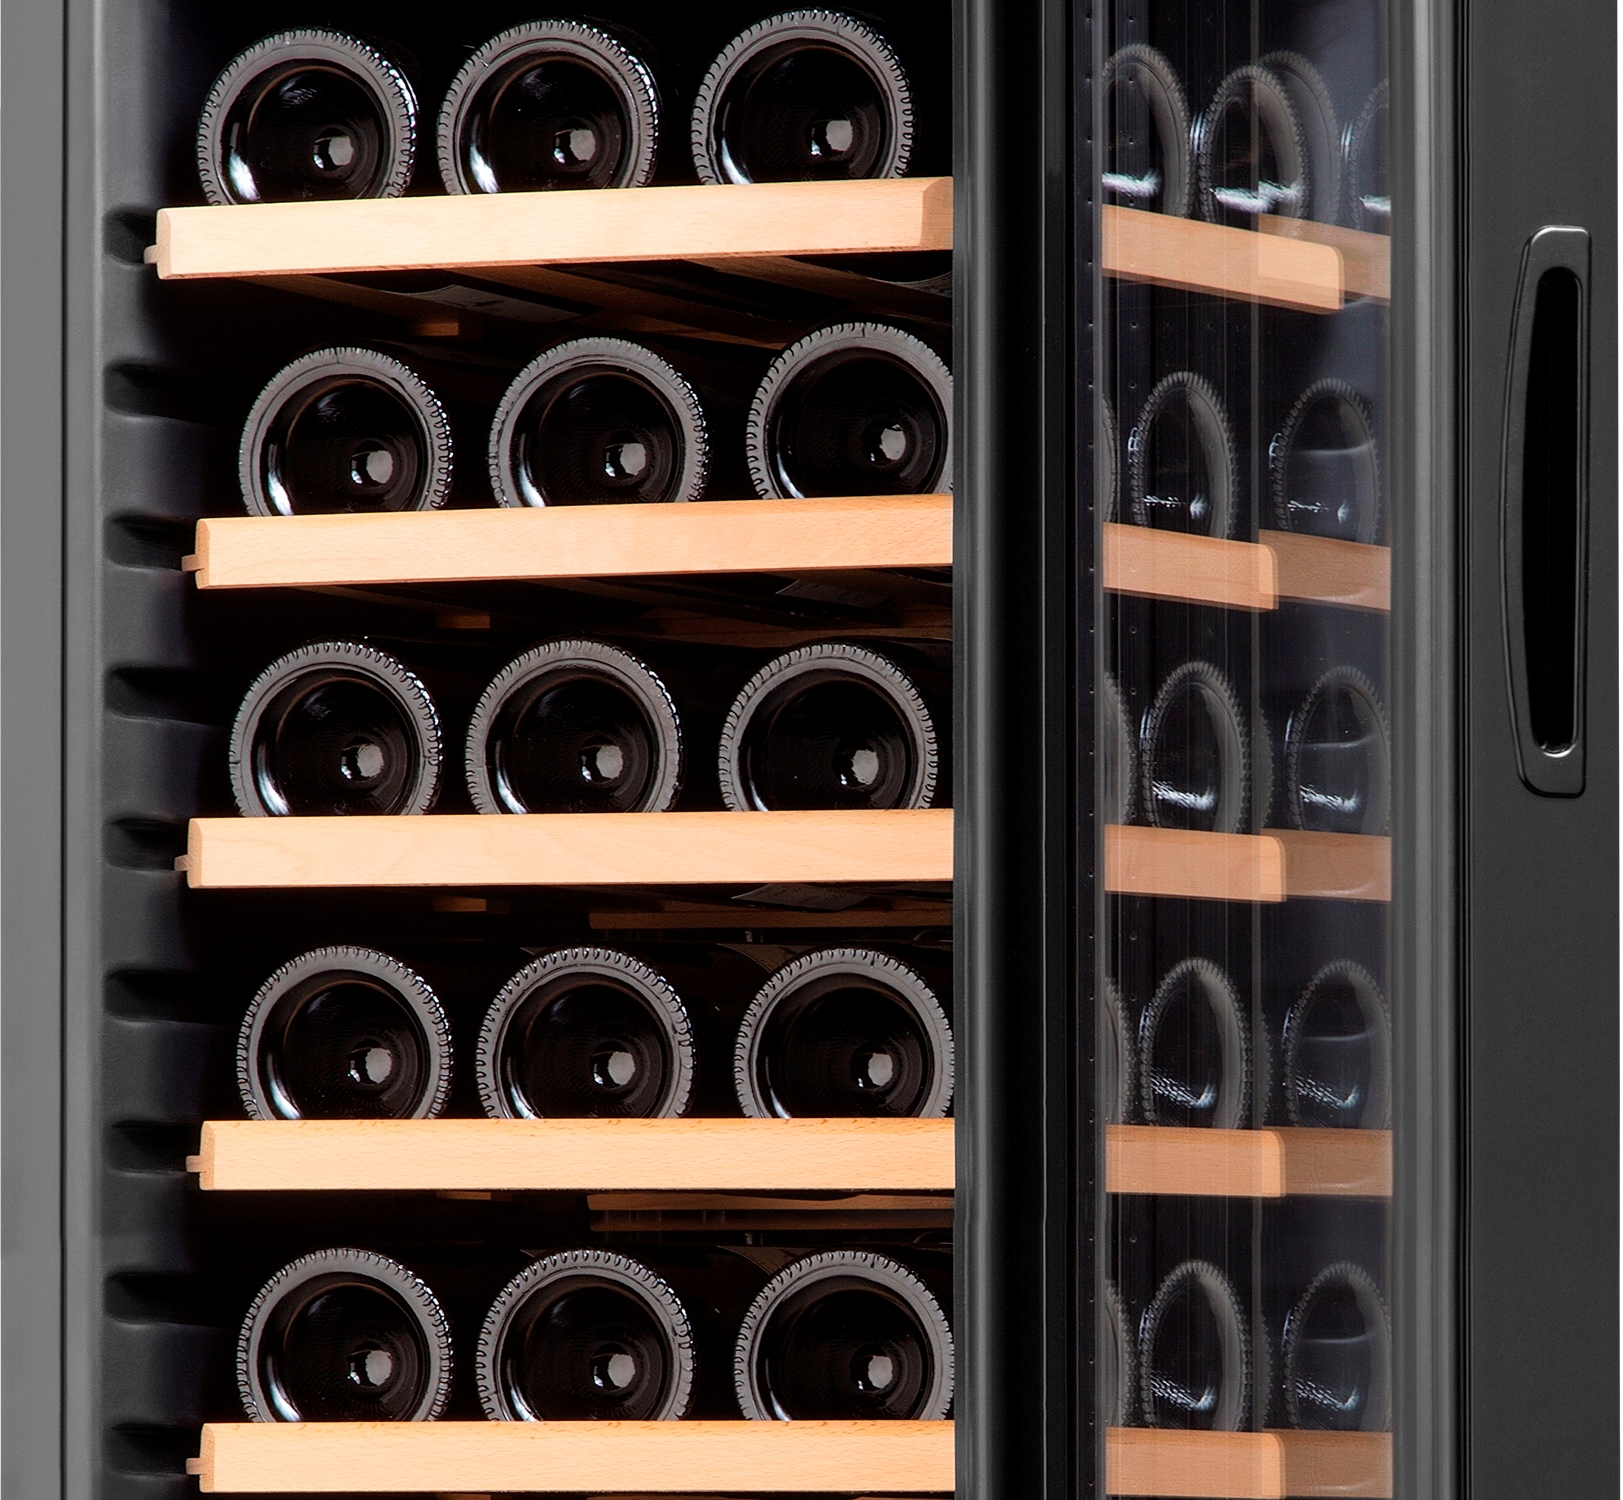 Jednozónová kompresorová vinotéka Philco PW 18 KF poslouží pro správné skladování vína s důrazem na zachování jeho jedinečných vlastností.